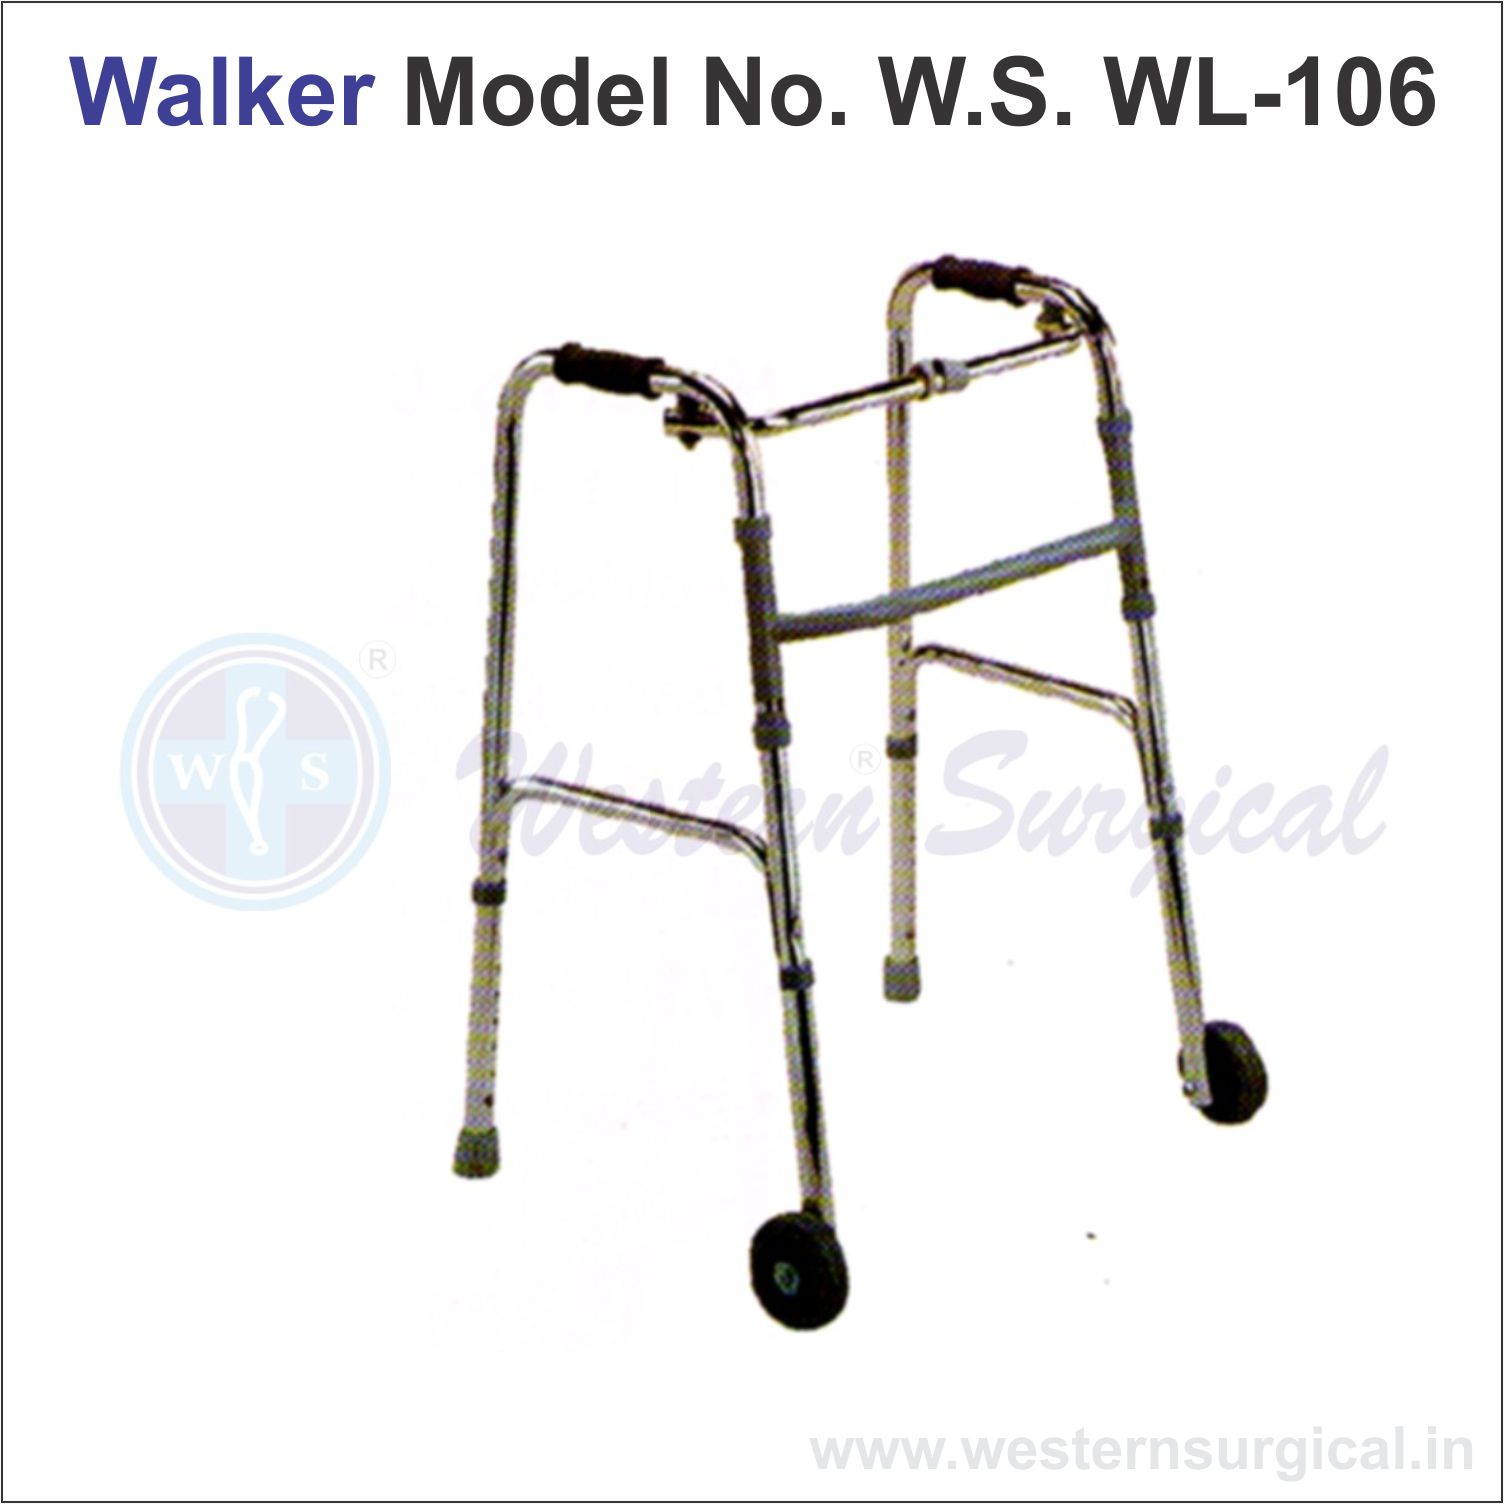 Walker Model No. W.S. WL - 106